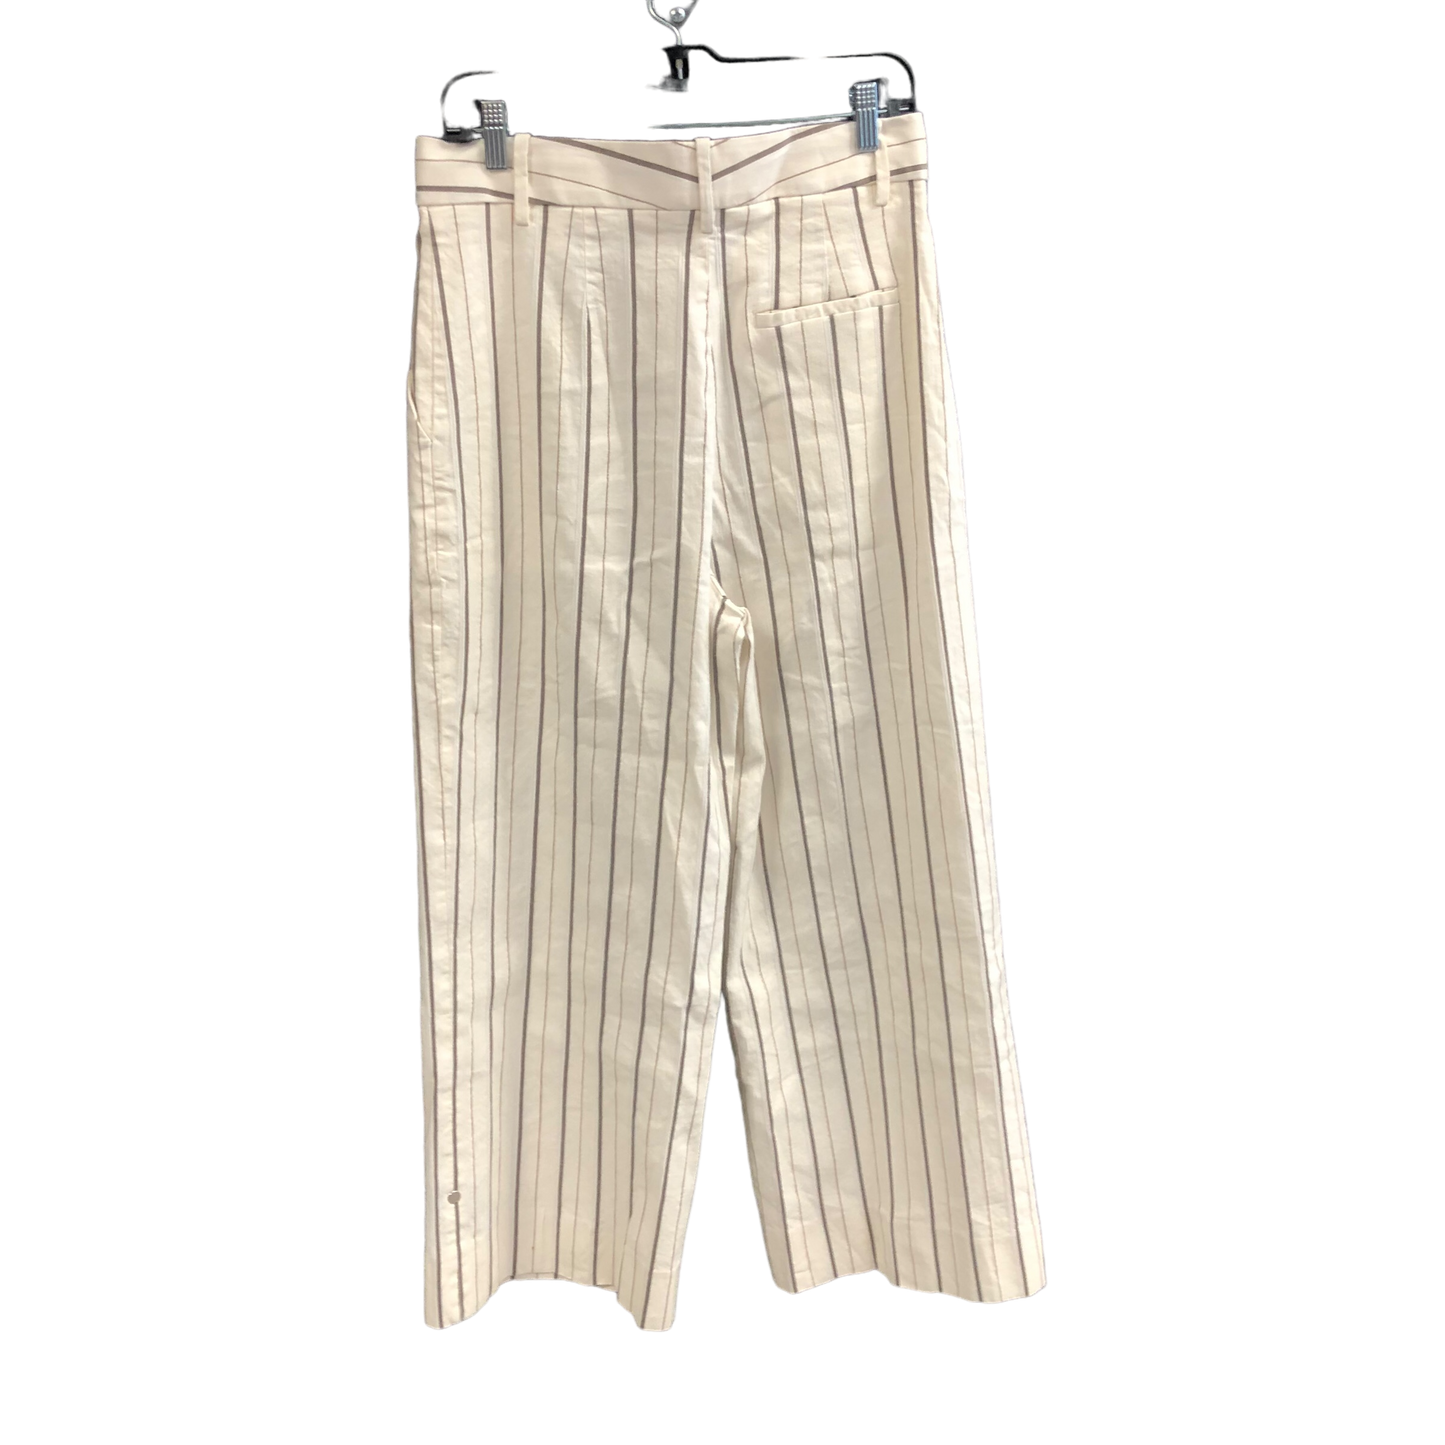 Striped Pattern Pants Wide Leg Banana Republic, Size 8